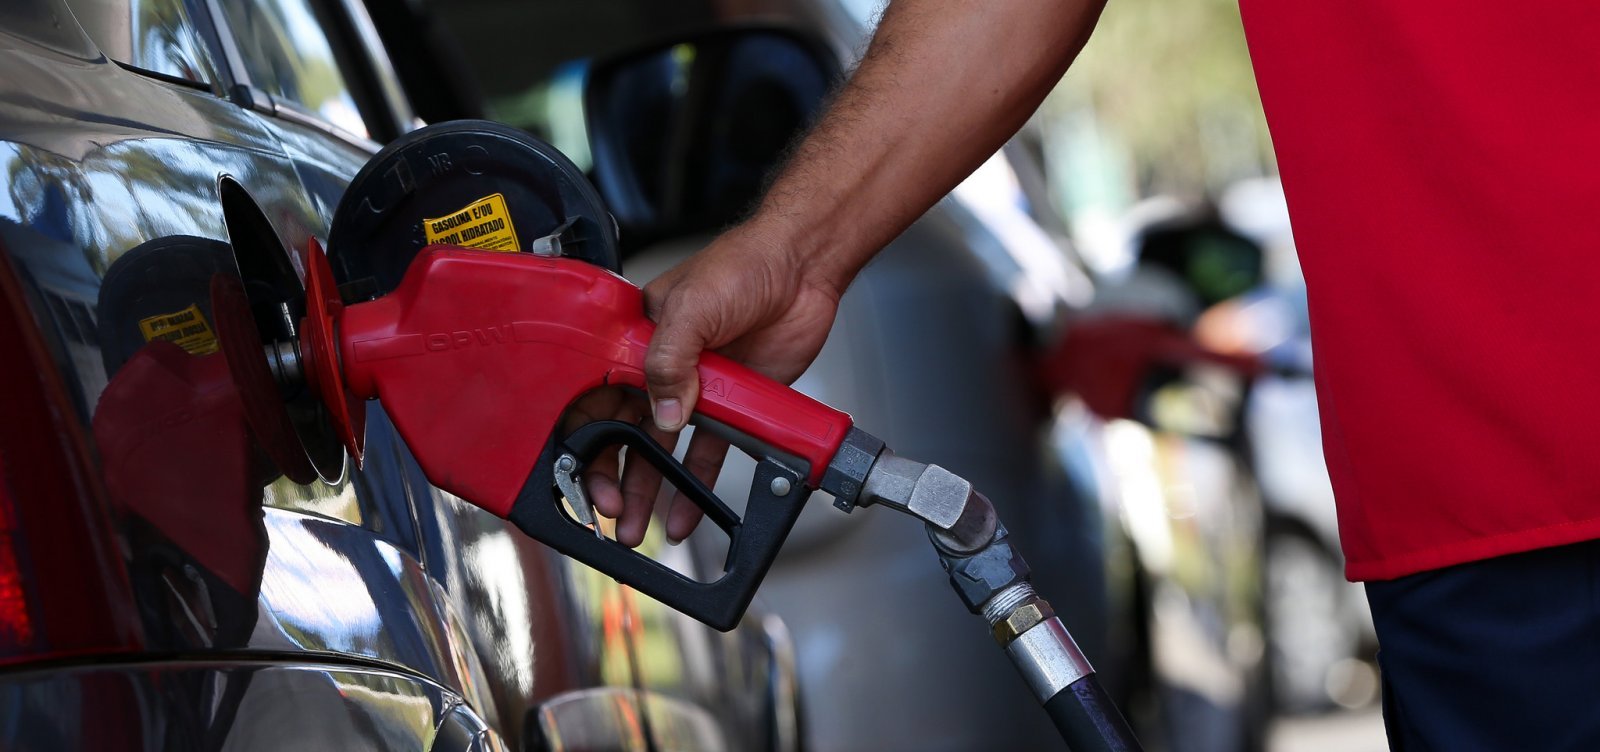 Para compensar aumento do imposto, Petrobras reduz preços de gasolina e diesel